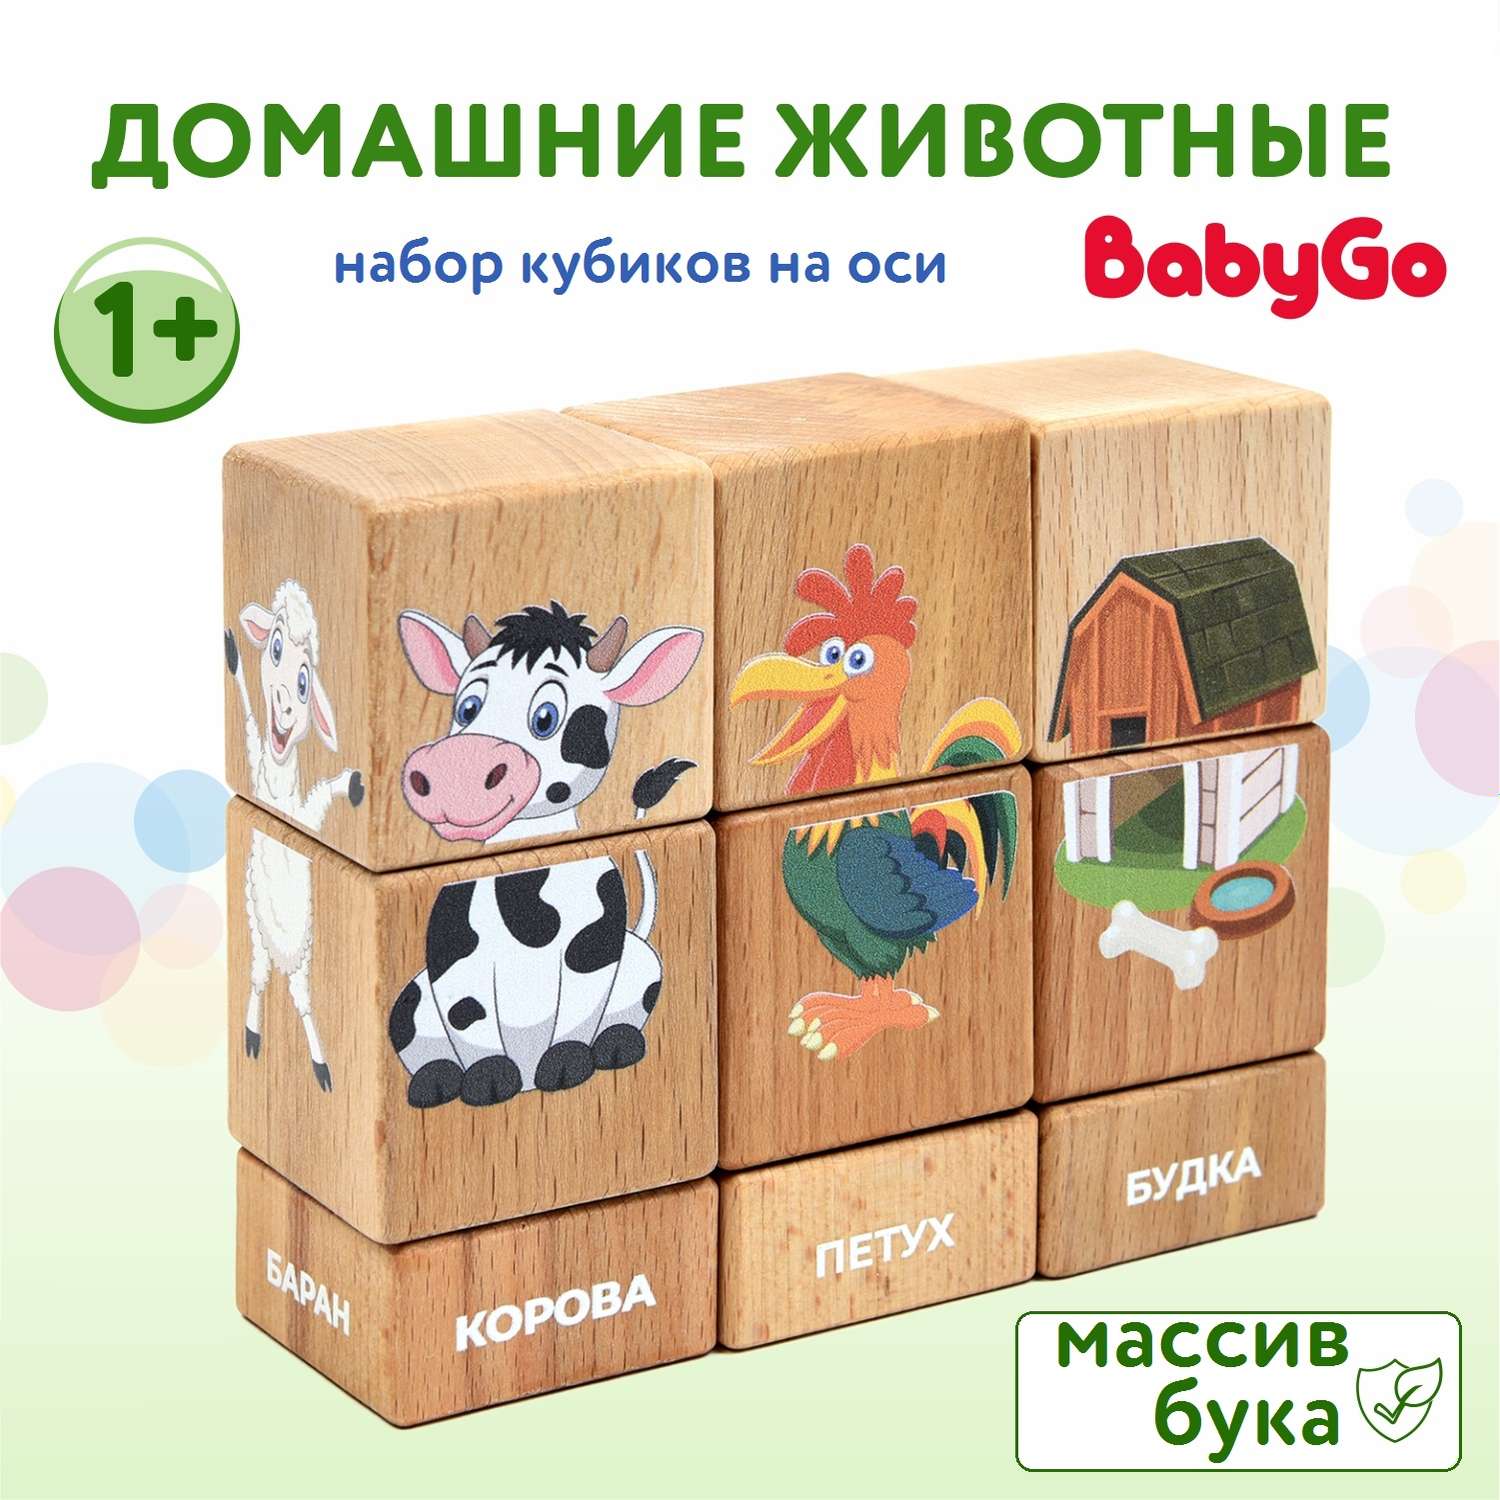 Набор кубиков BabyGo Домашние животные на оси 15204 - фото 1